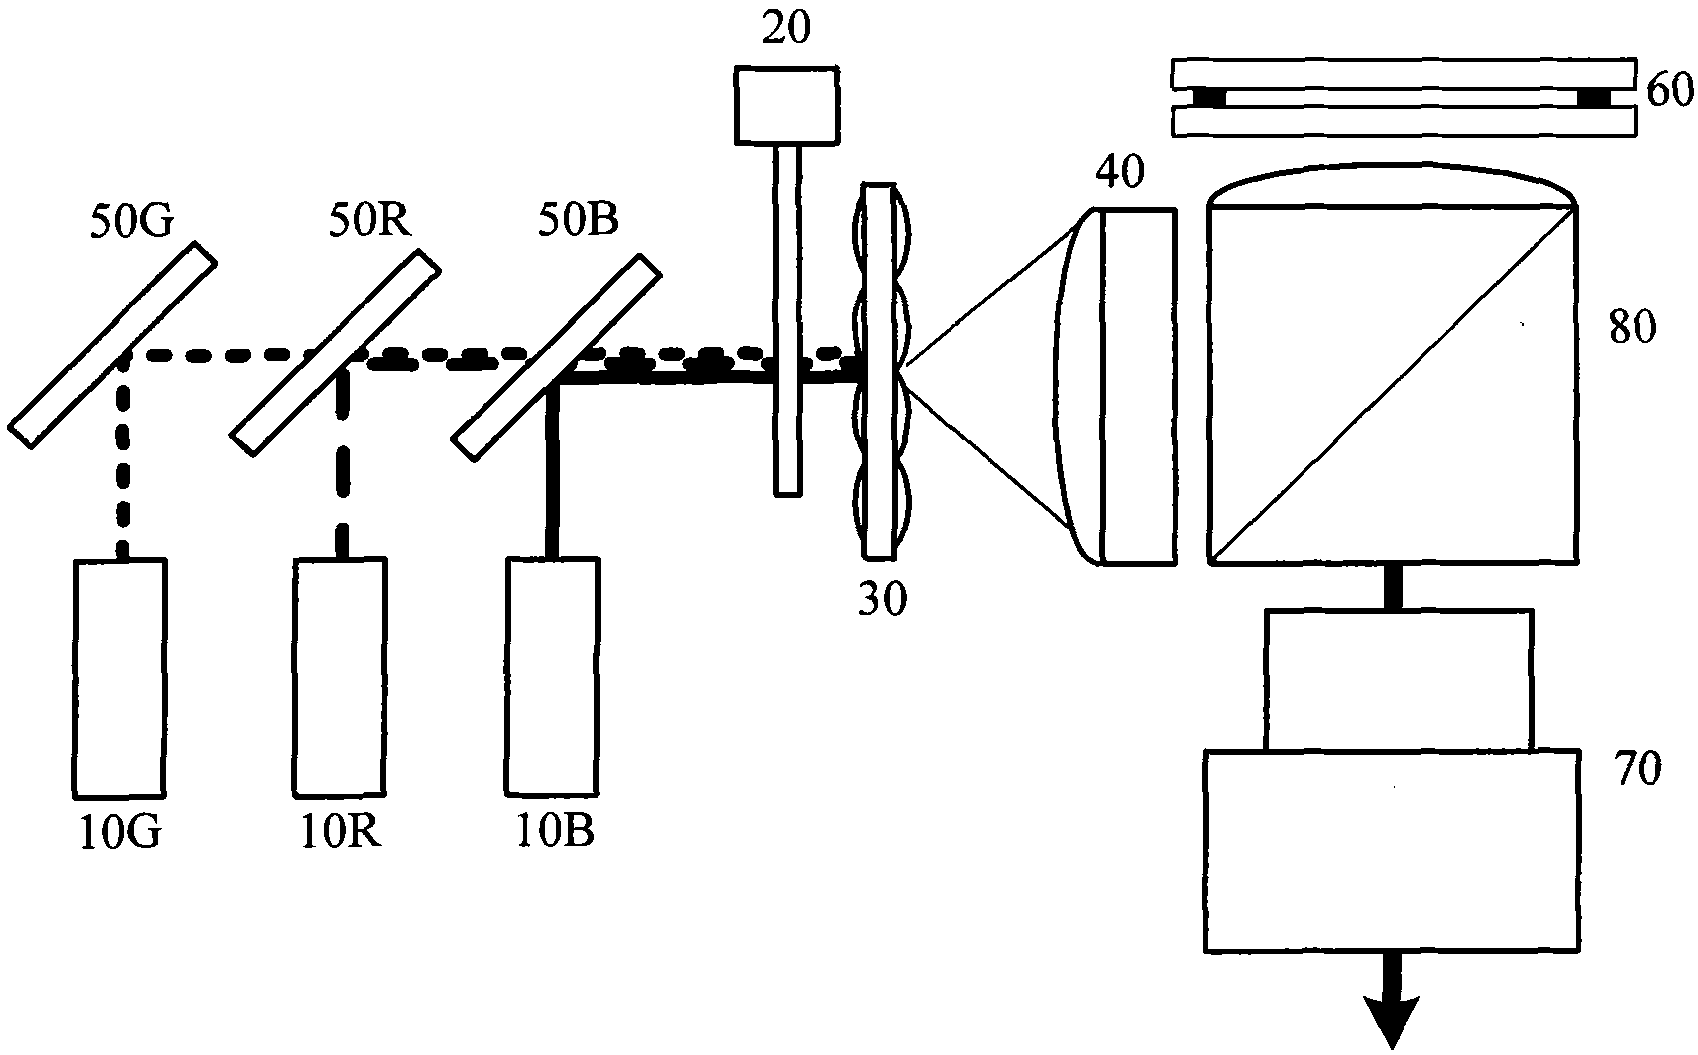 Reflection-type optical engine